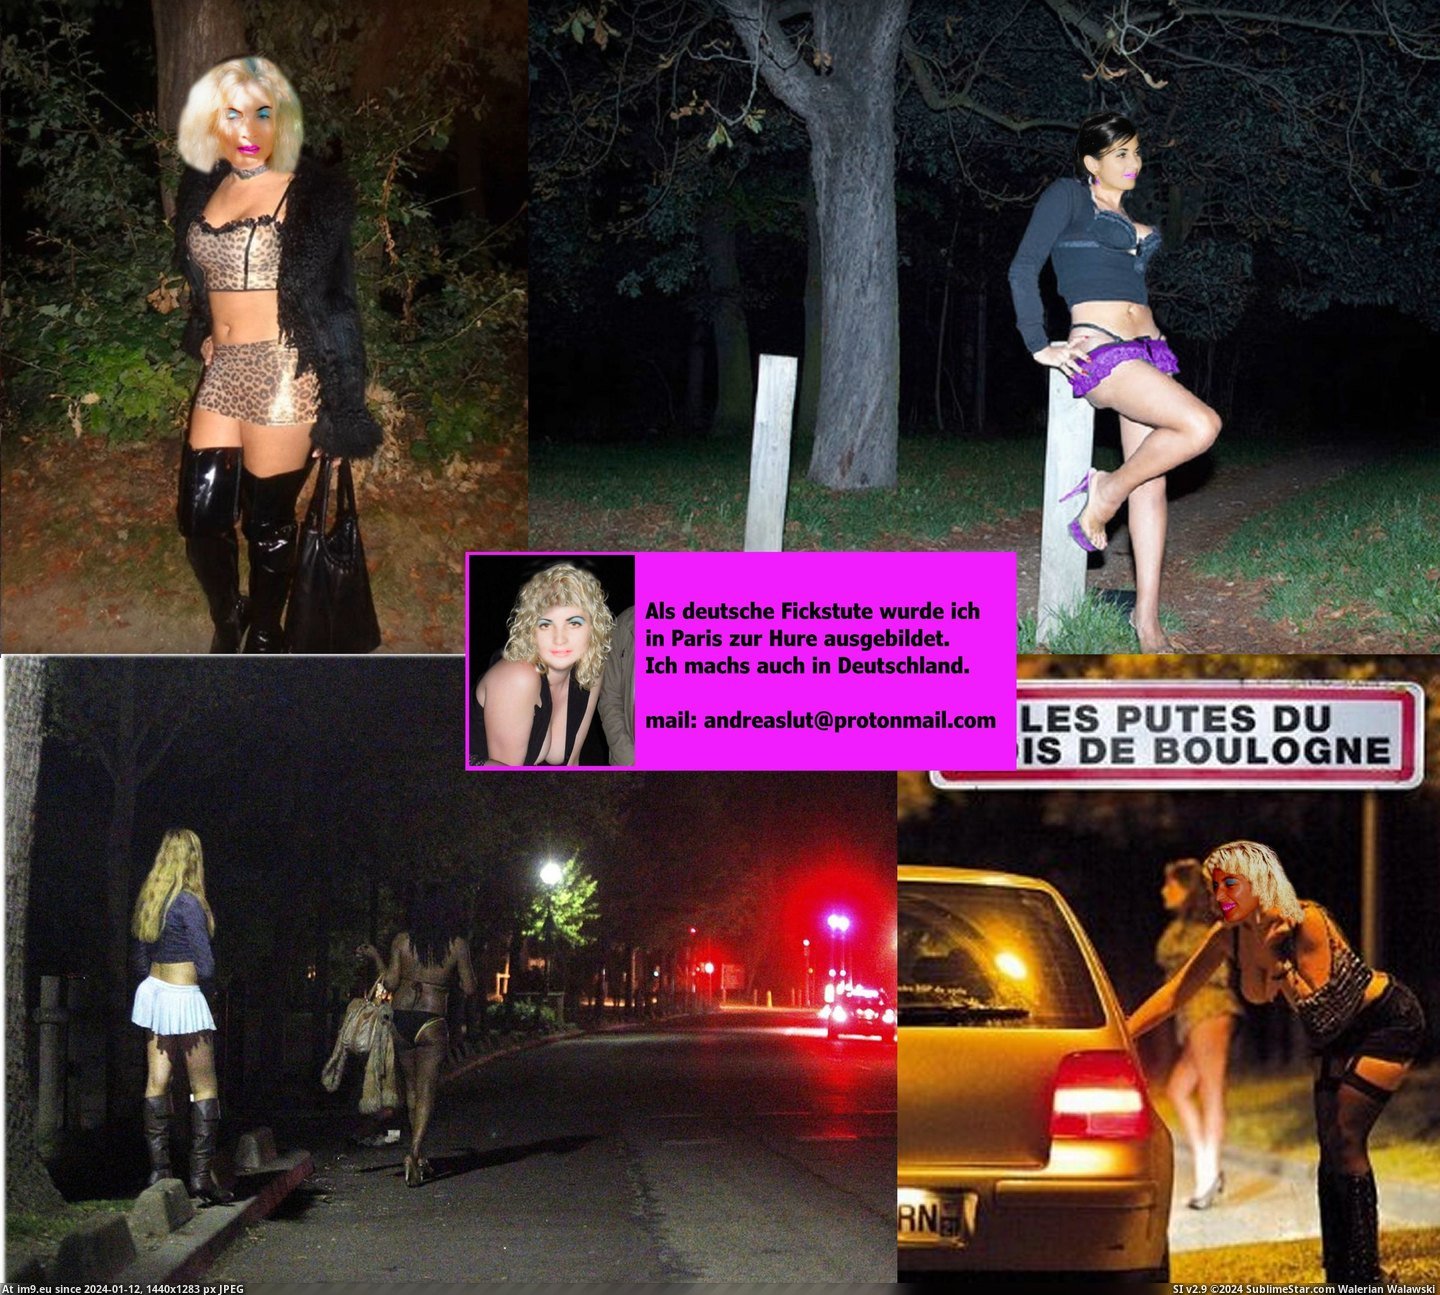 #Slut #Whore #Fotze #Prostituee #Webwhore #Nutte #Pute #Andrea #Strich #Hure #Putain Andrea Bois de Boulogne putes.2jpg Pic. (Image of album Instant Upload))